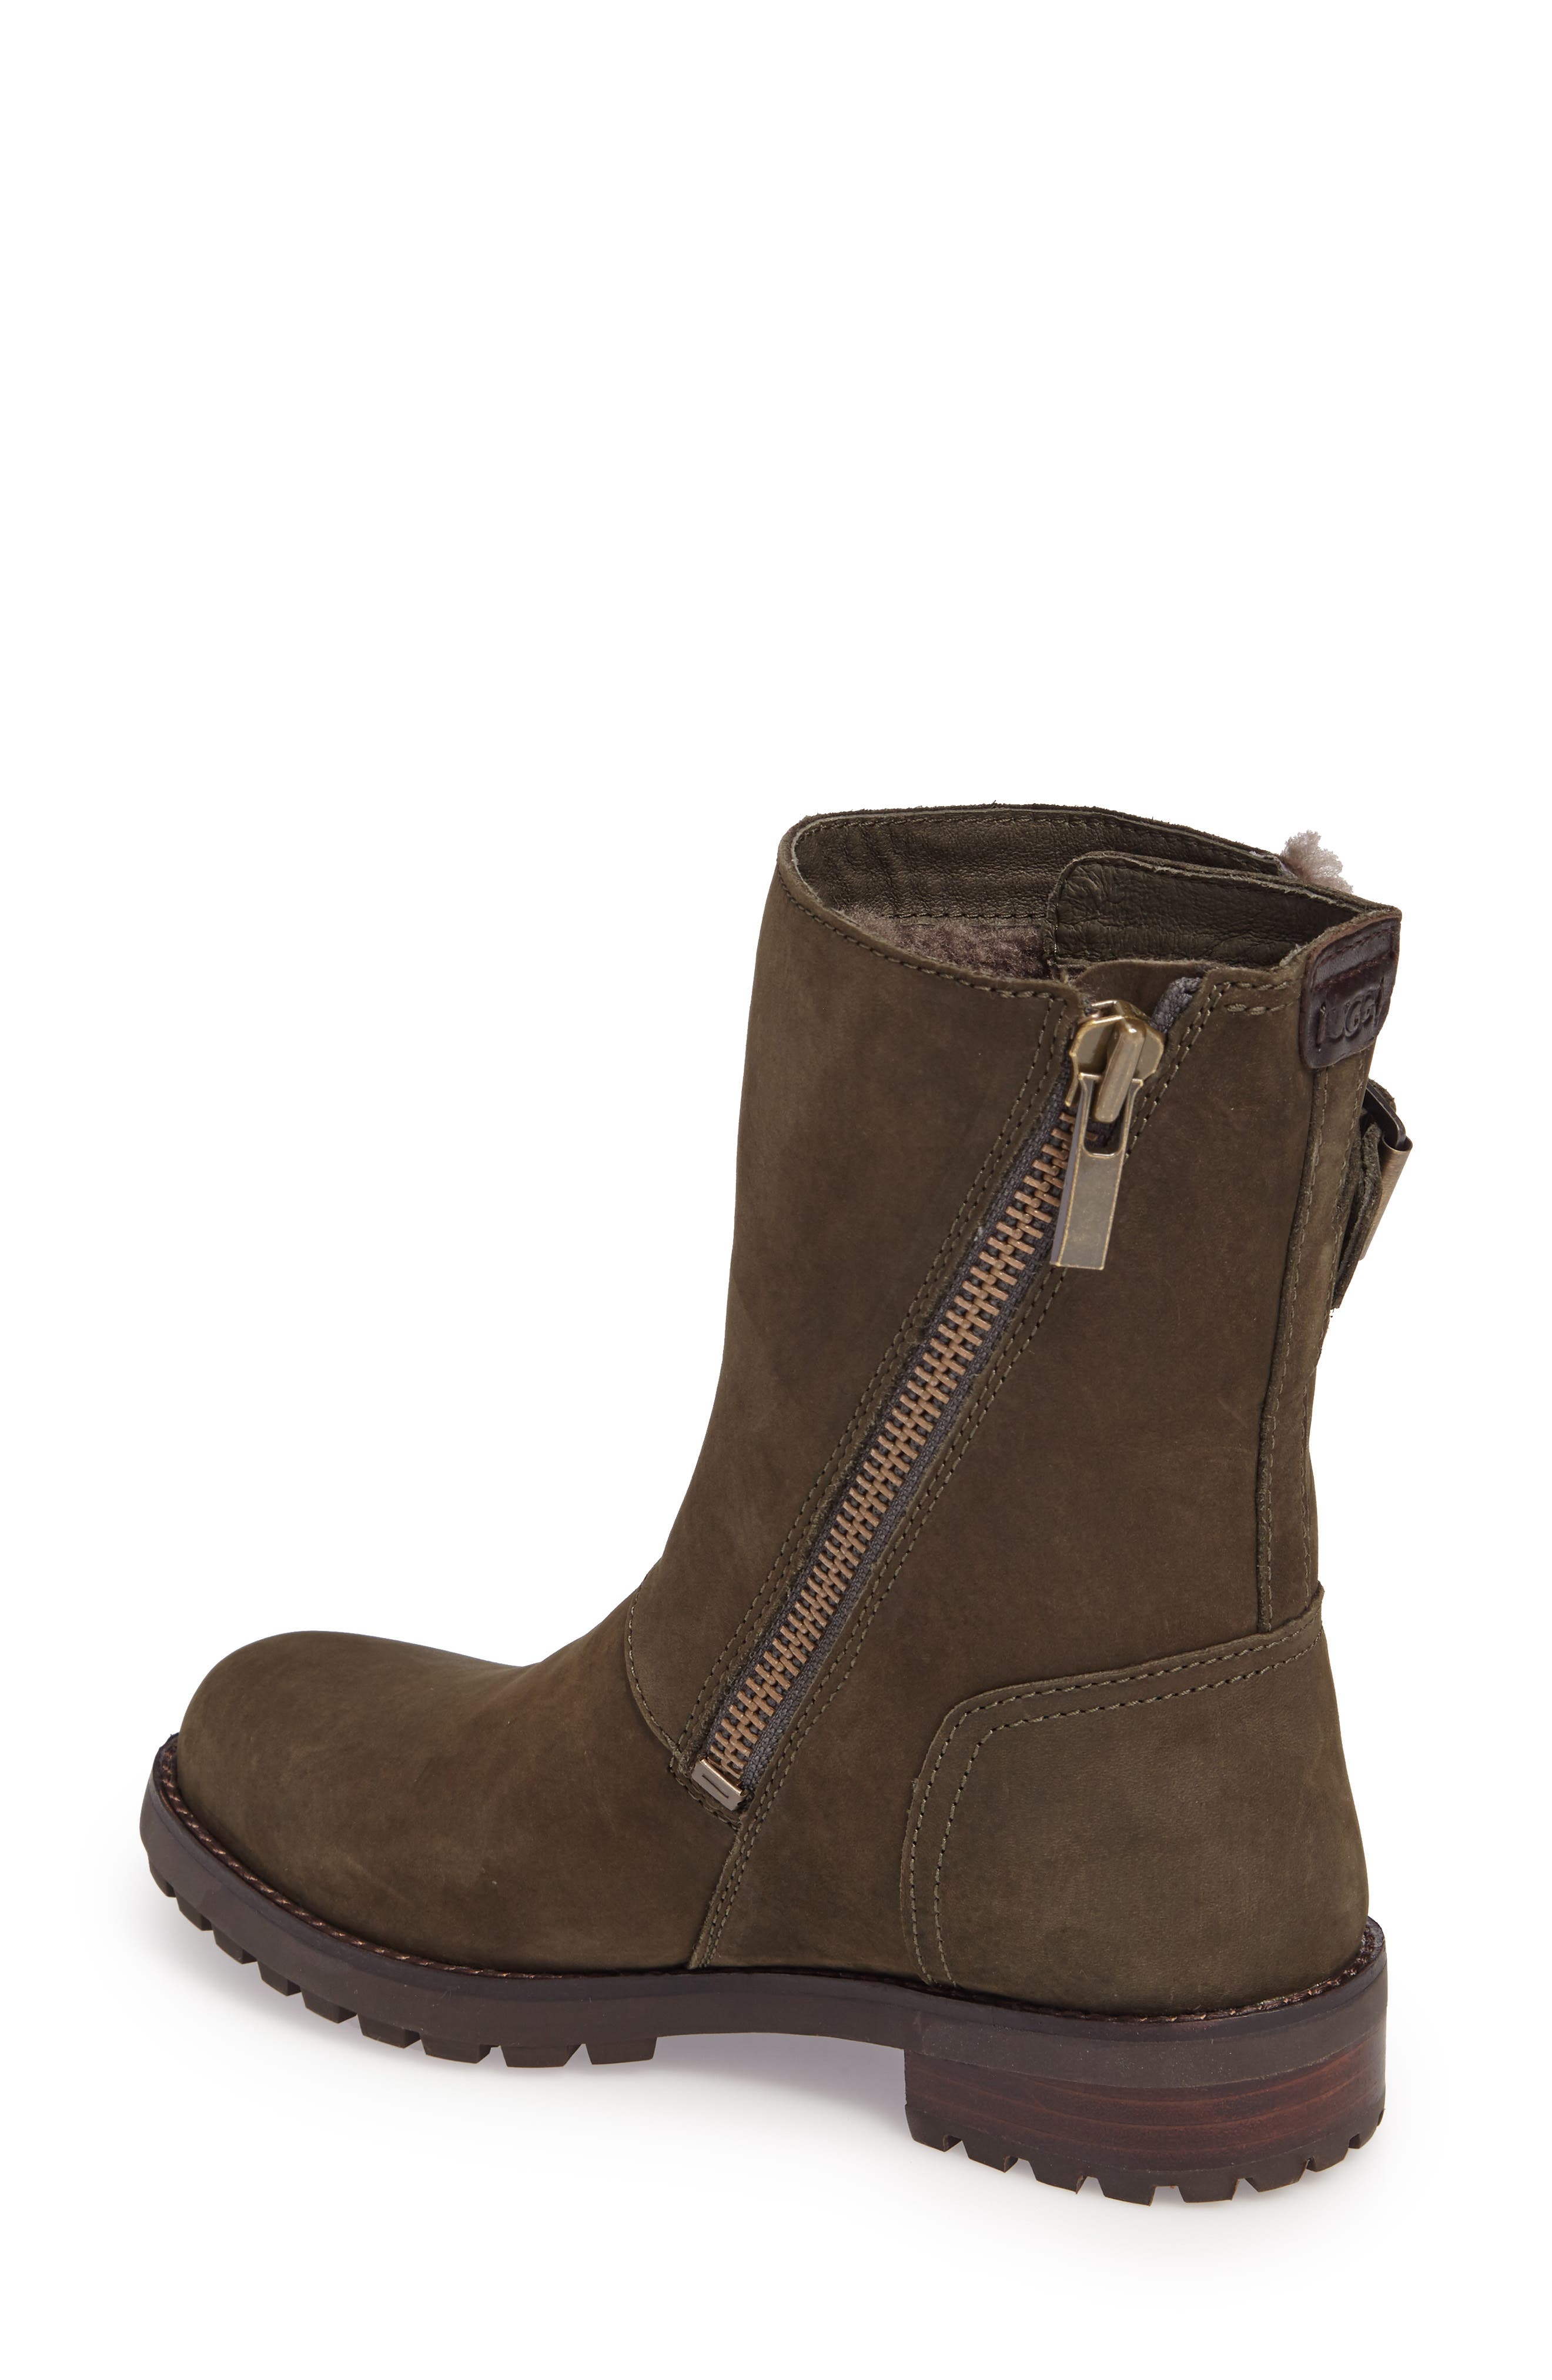 niels waterproof genuine shearling lined boot